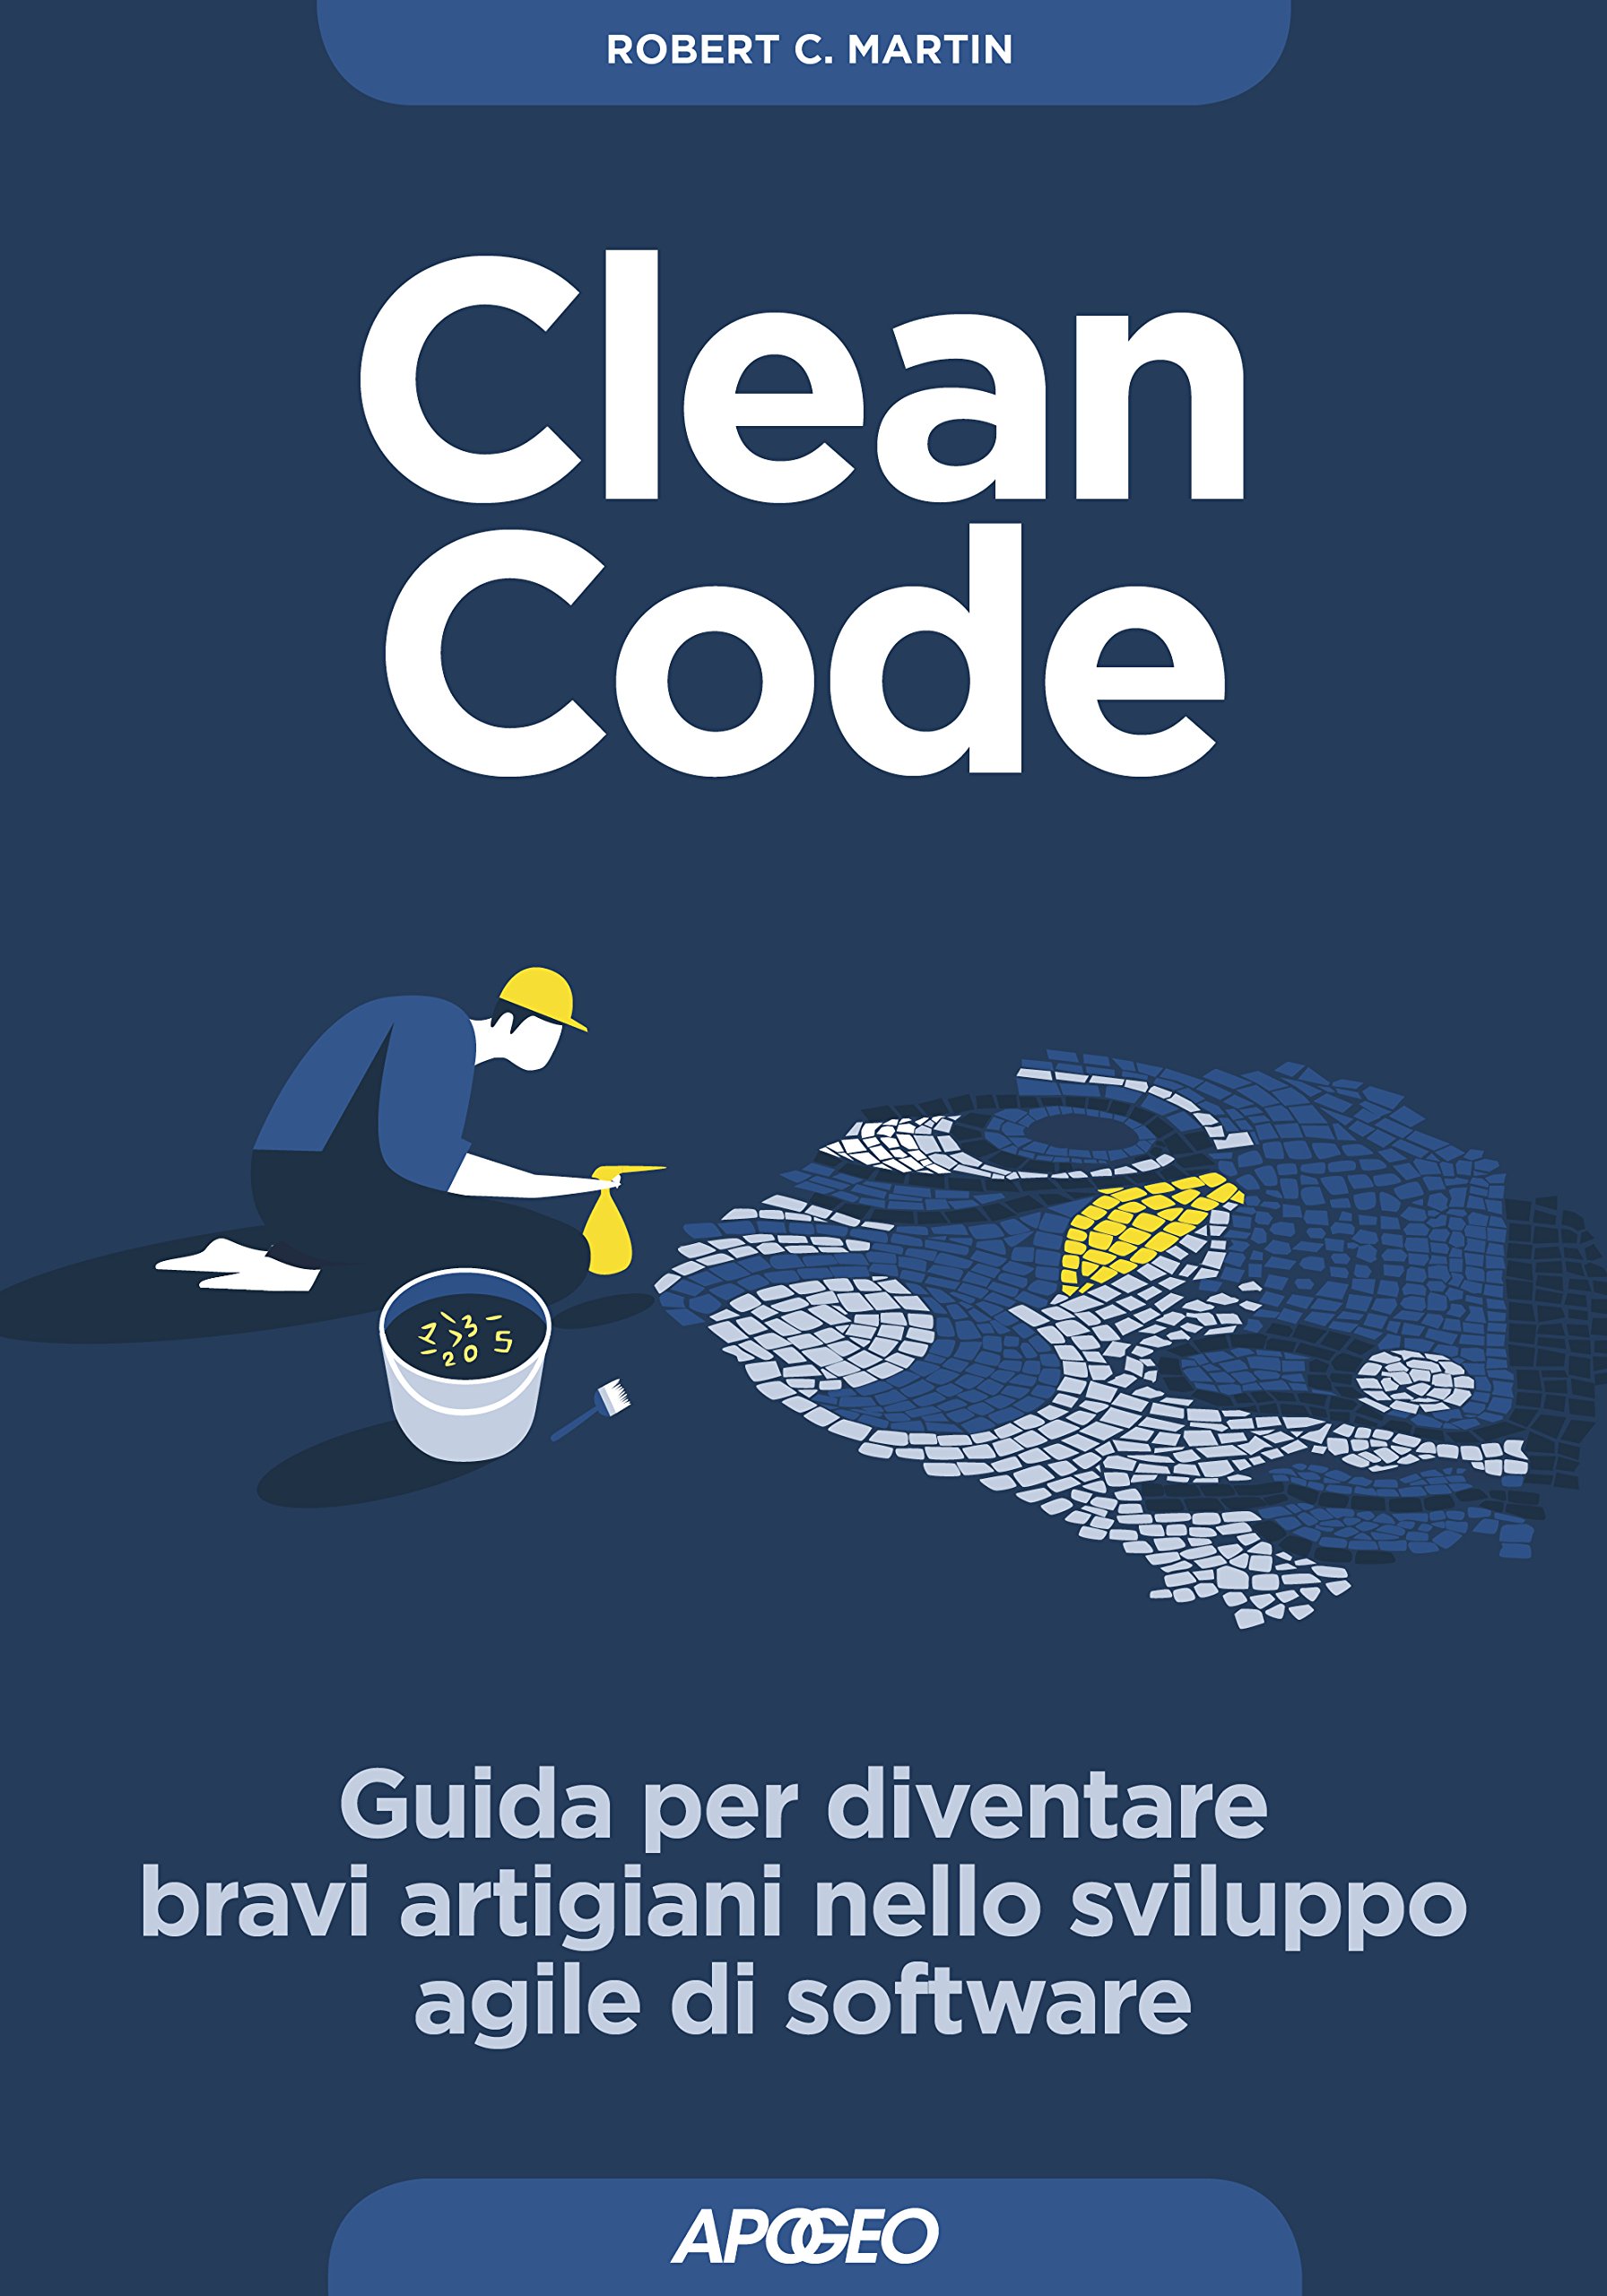 Clean Code: Guida per diventare bravi artigiani nello sviluppo agile di software (Maestri di programmazione Vol. 2) (Italian Edition)